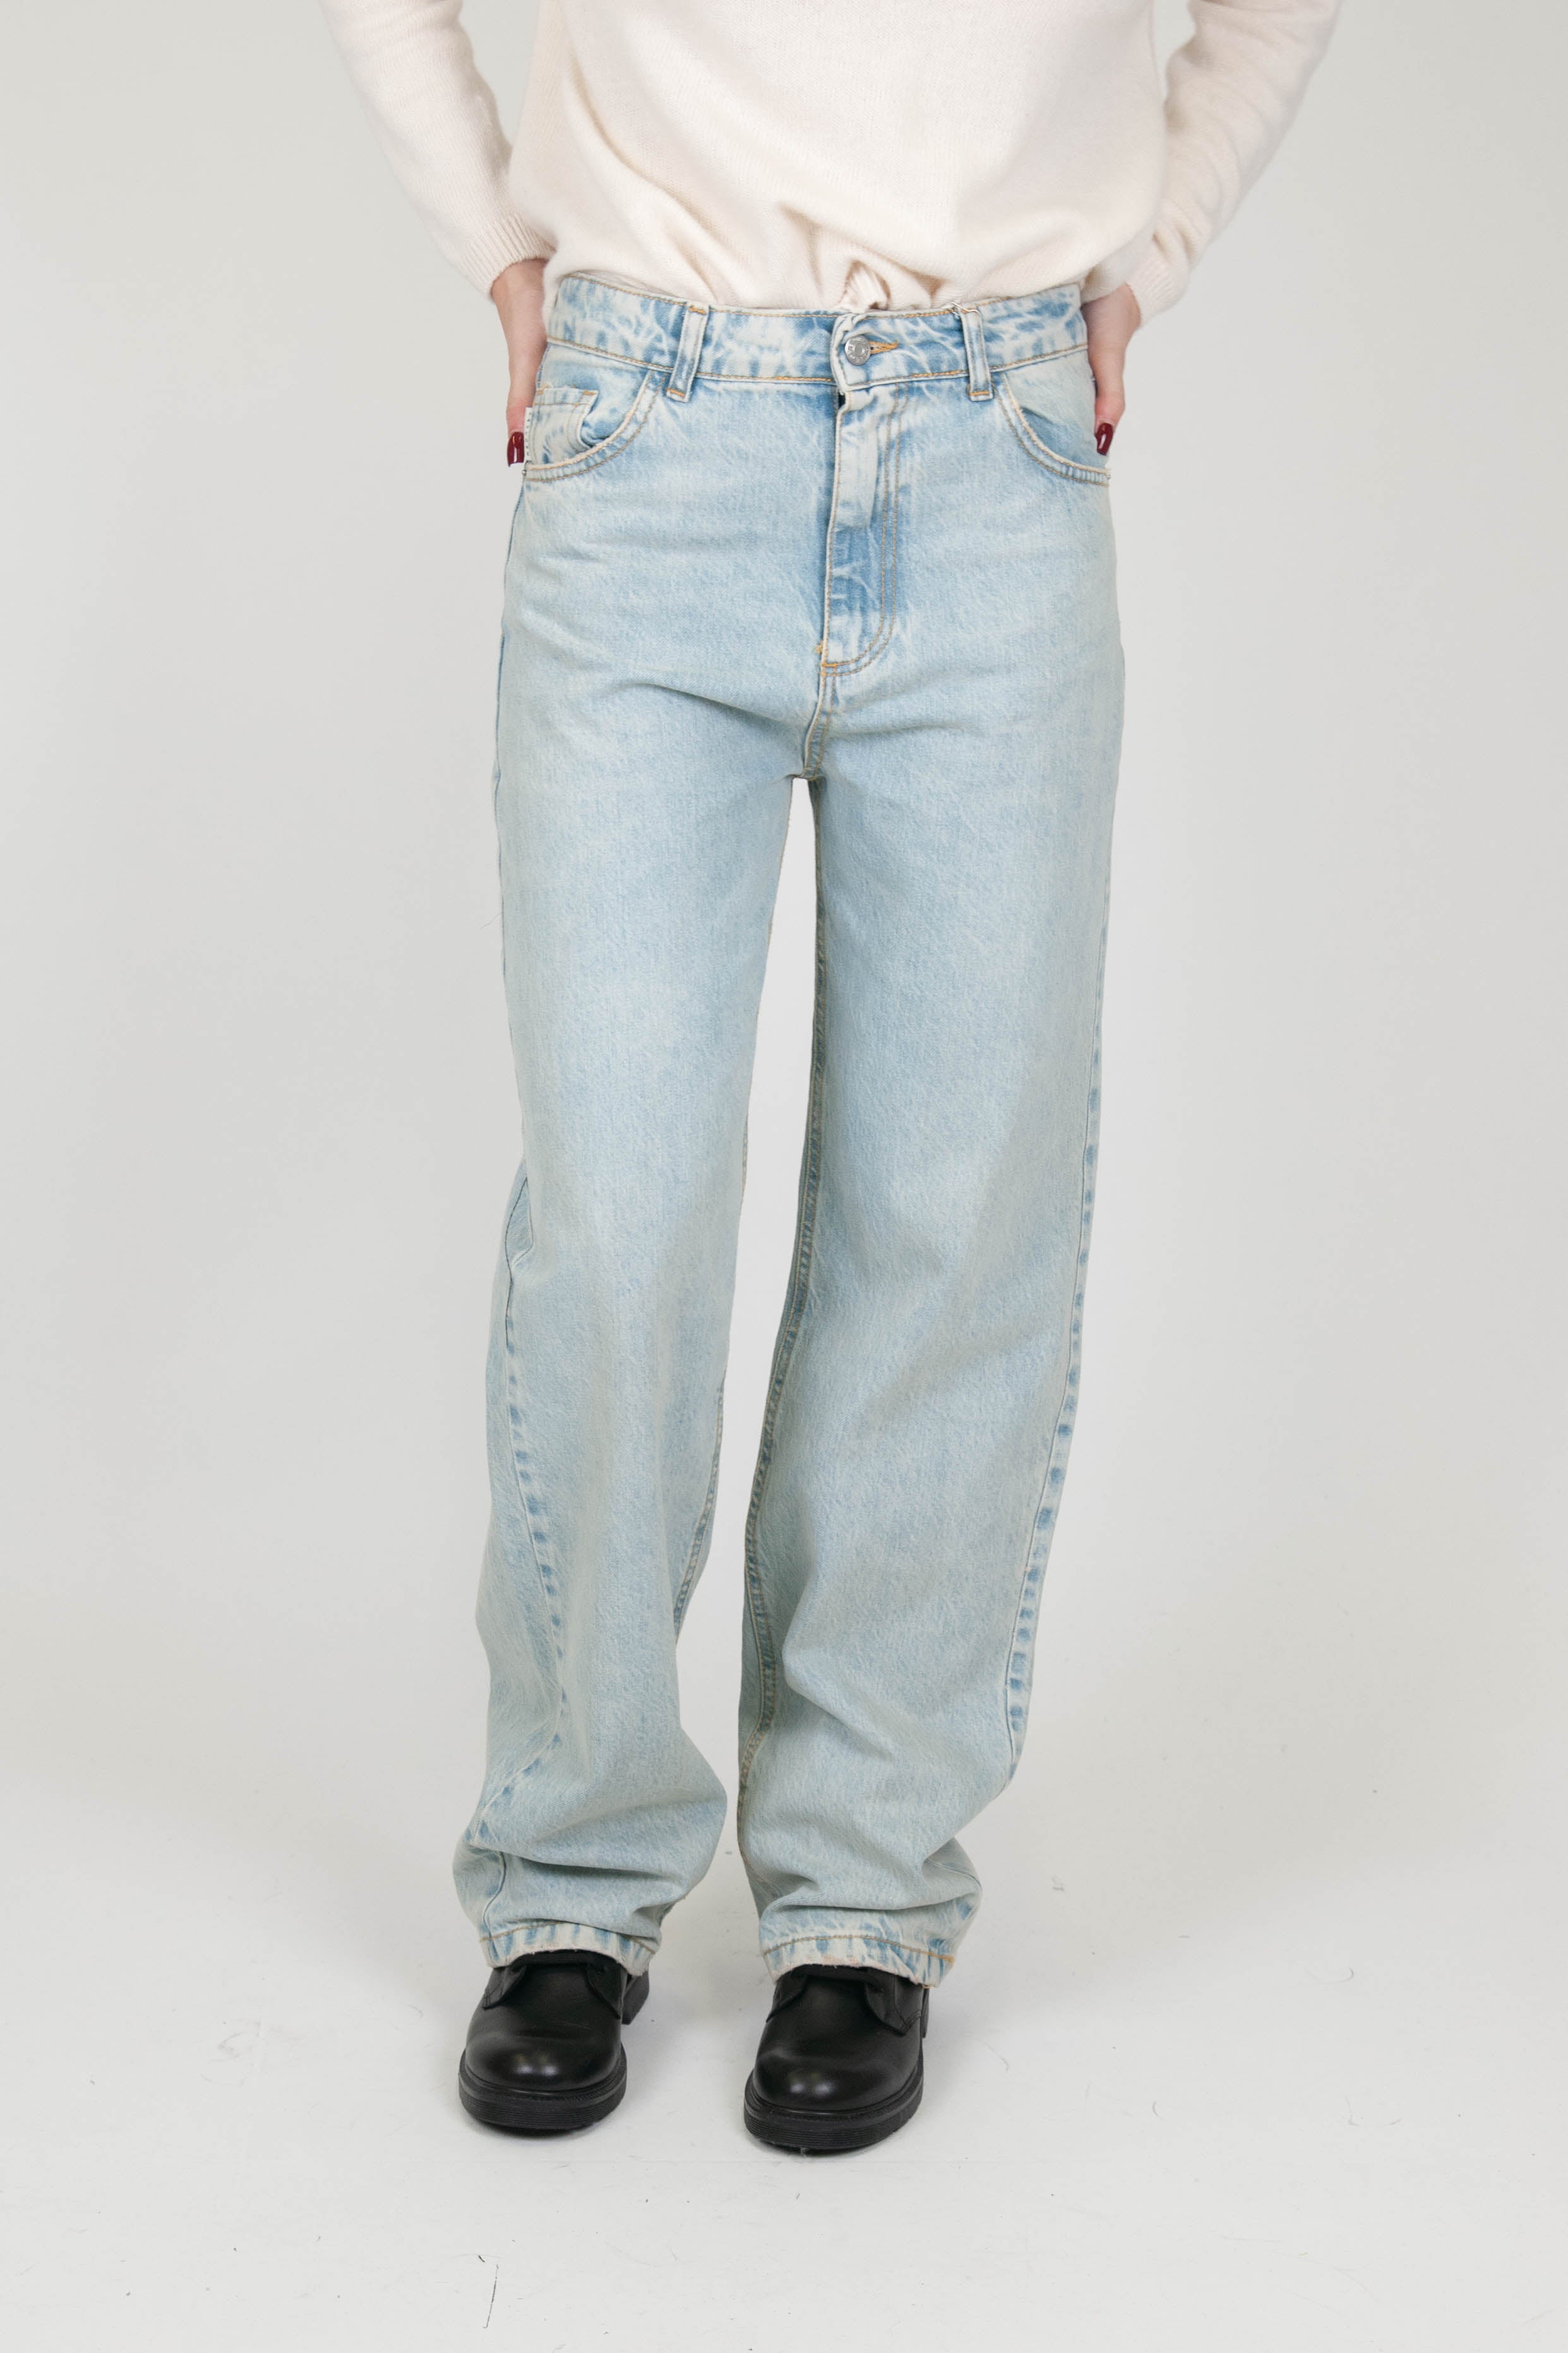 Haveone - Jeans regular lavaggio chiaro